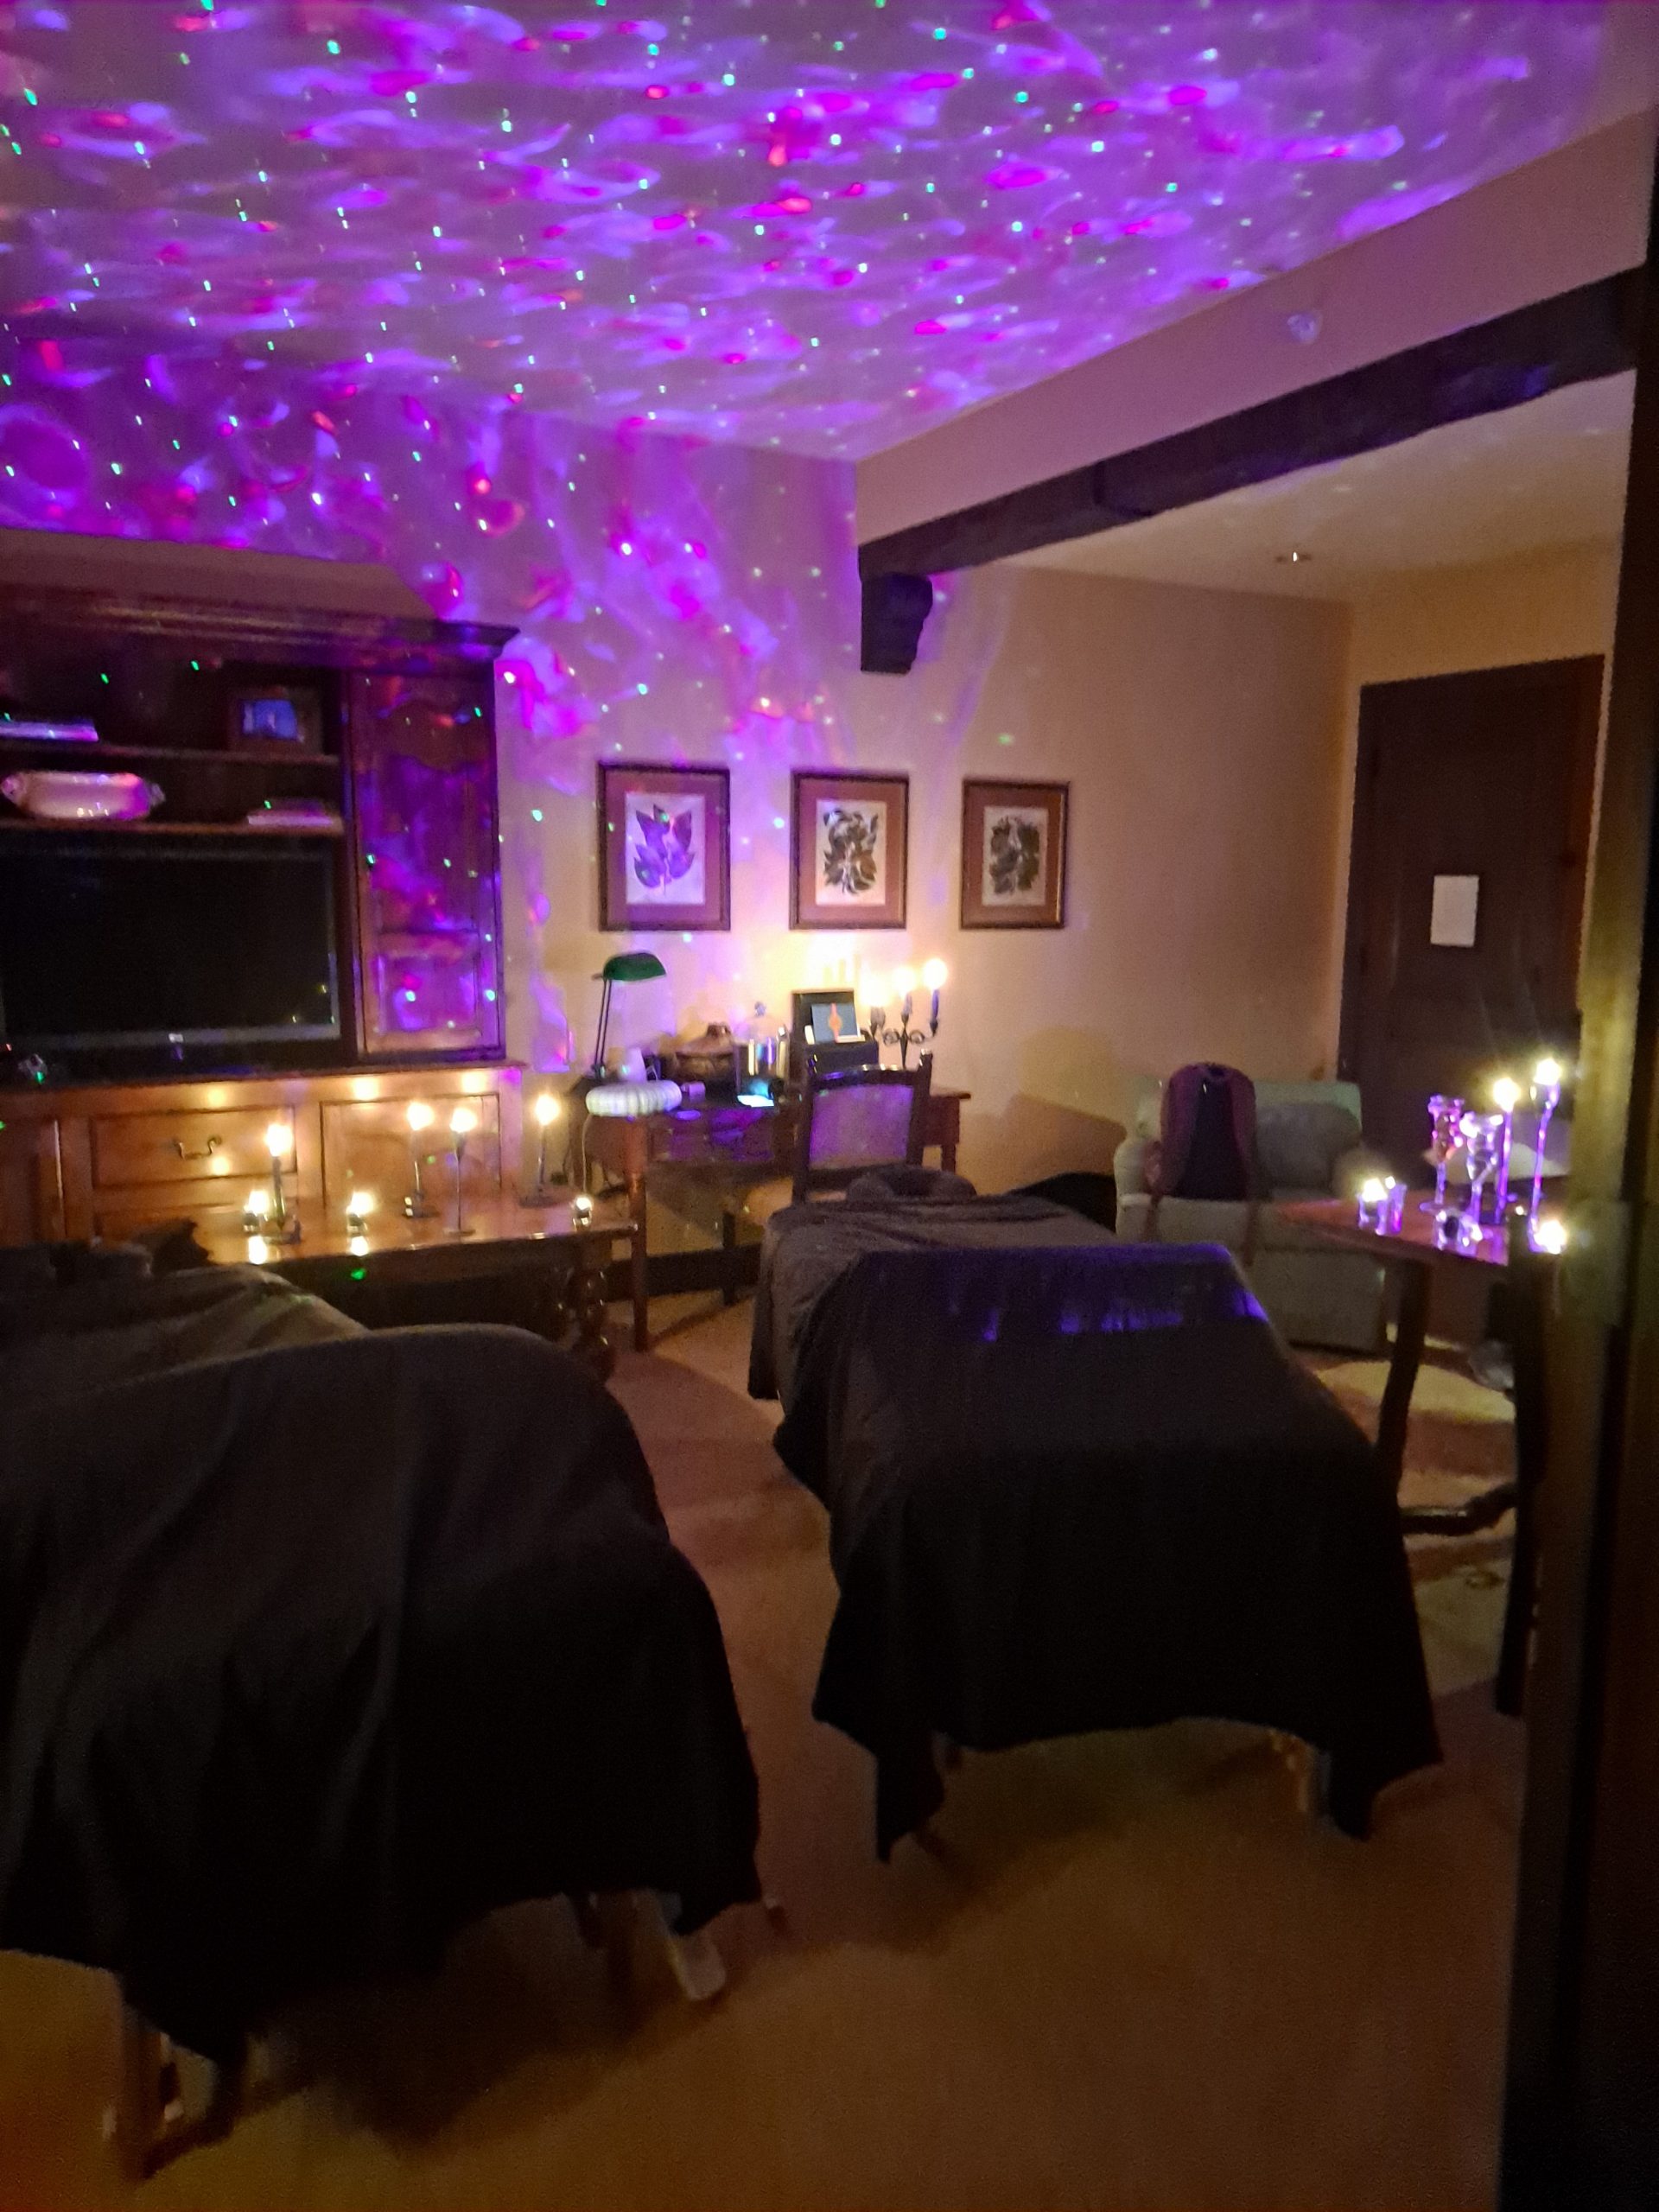 Keva-Massage-Mobile-Massage-Therapy-Intimacy-Coaching-HJouston-Texas-purple